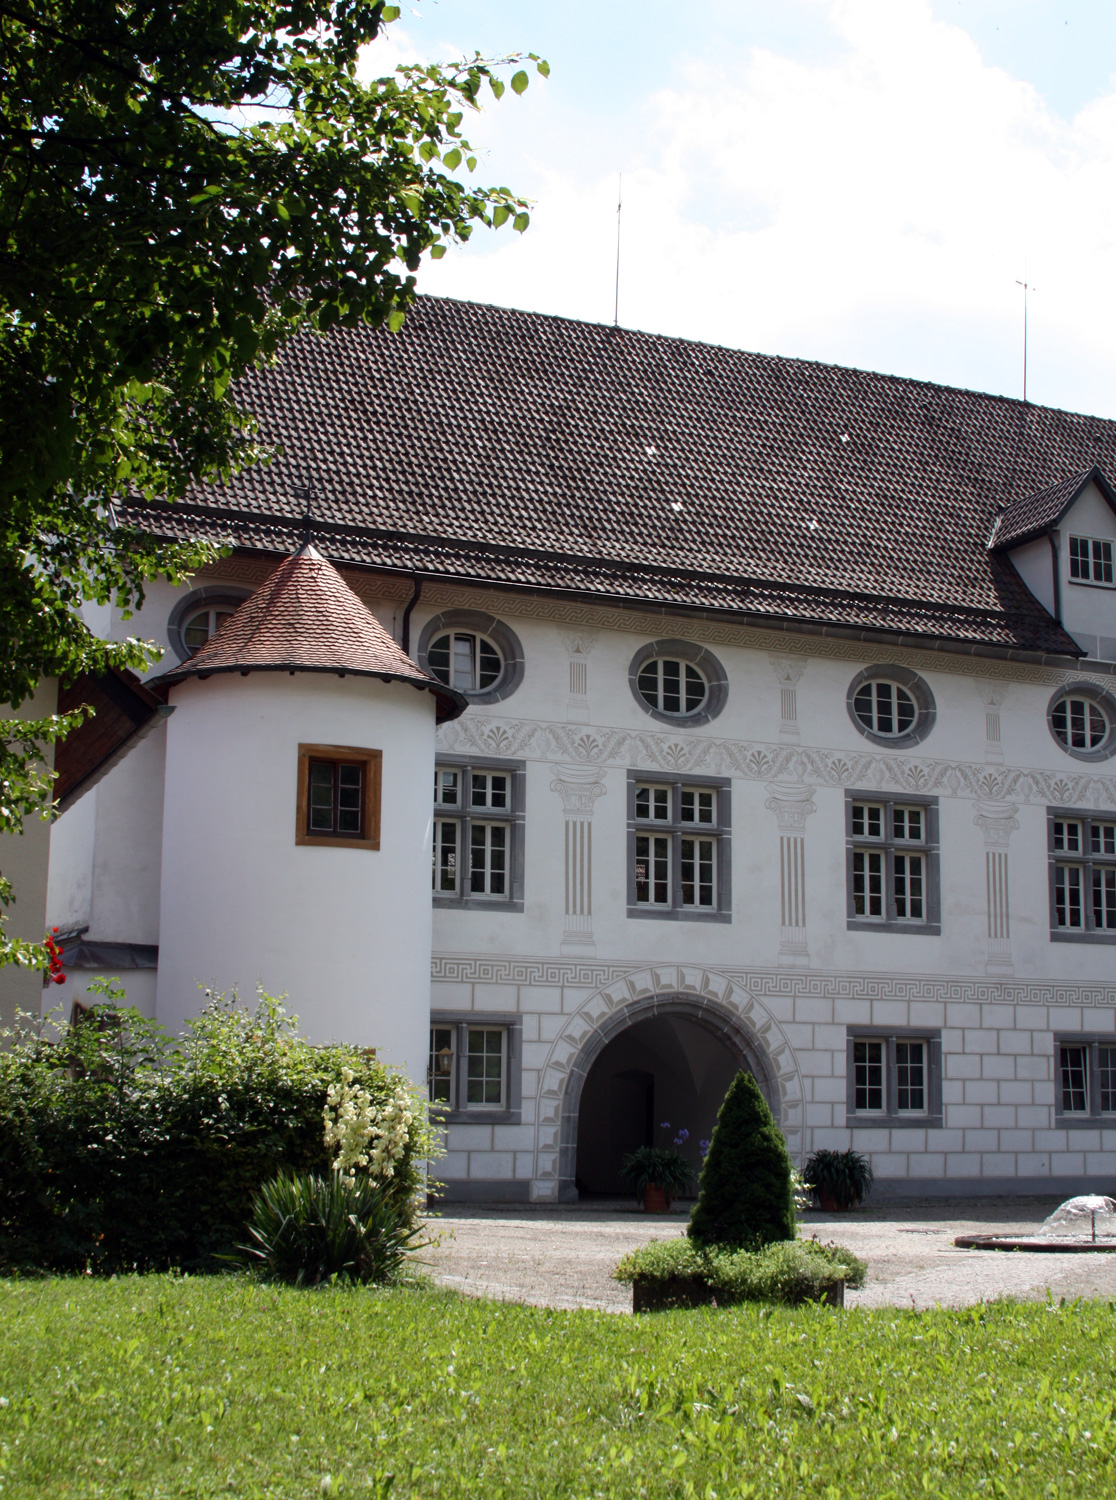 Schloss Wiesensteig im Landkreis Göppingen